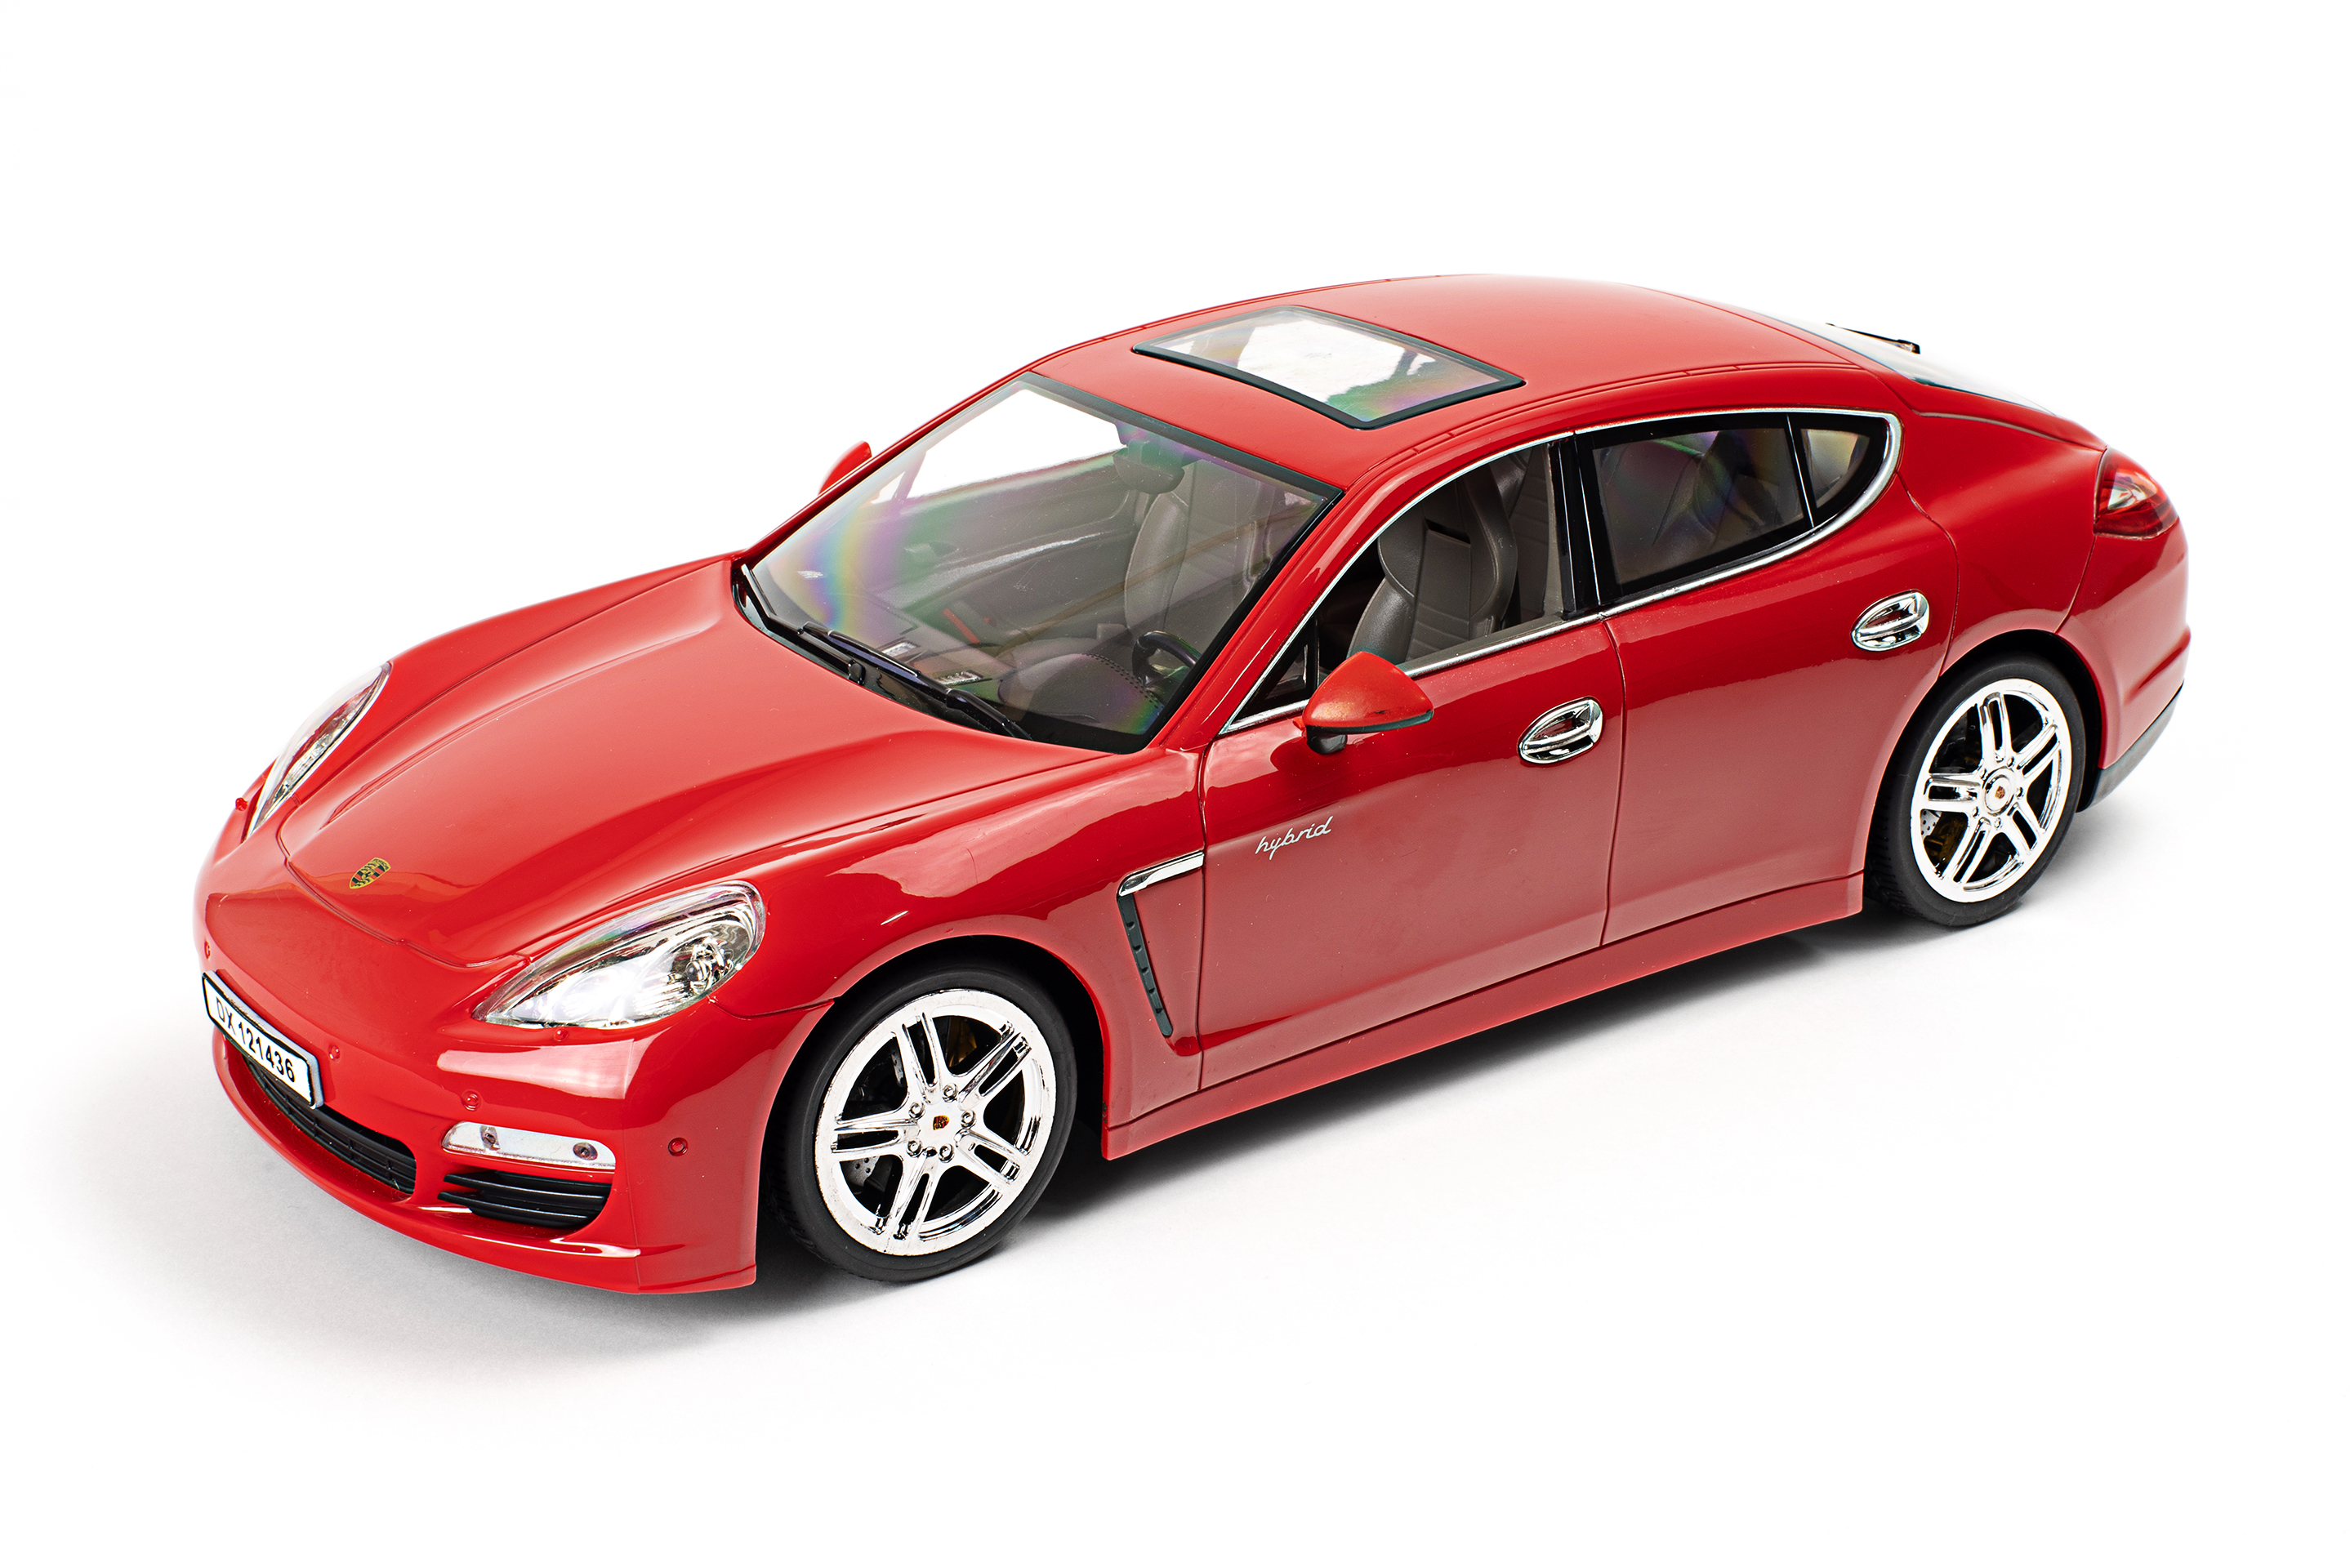 Ferngesteuertes RC Auto Kinder Spielzeug Geschenk Porsche Panamera S Hybrid 34cm